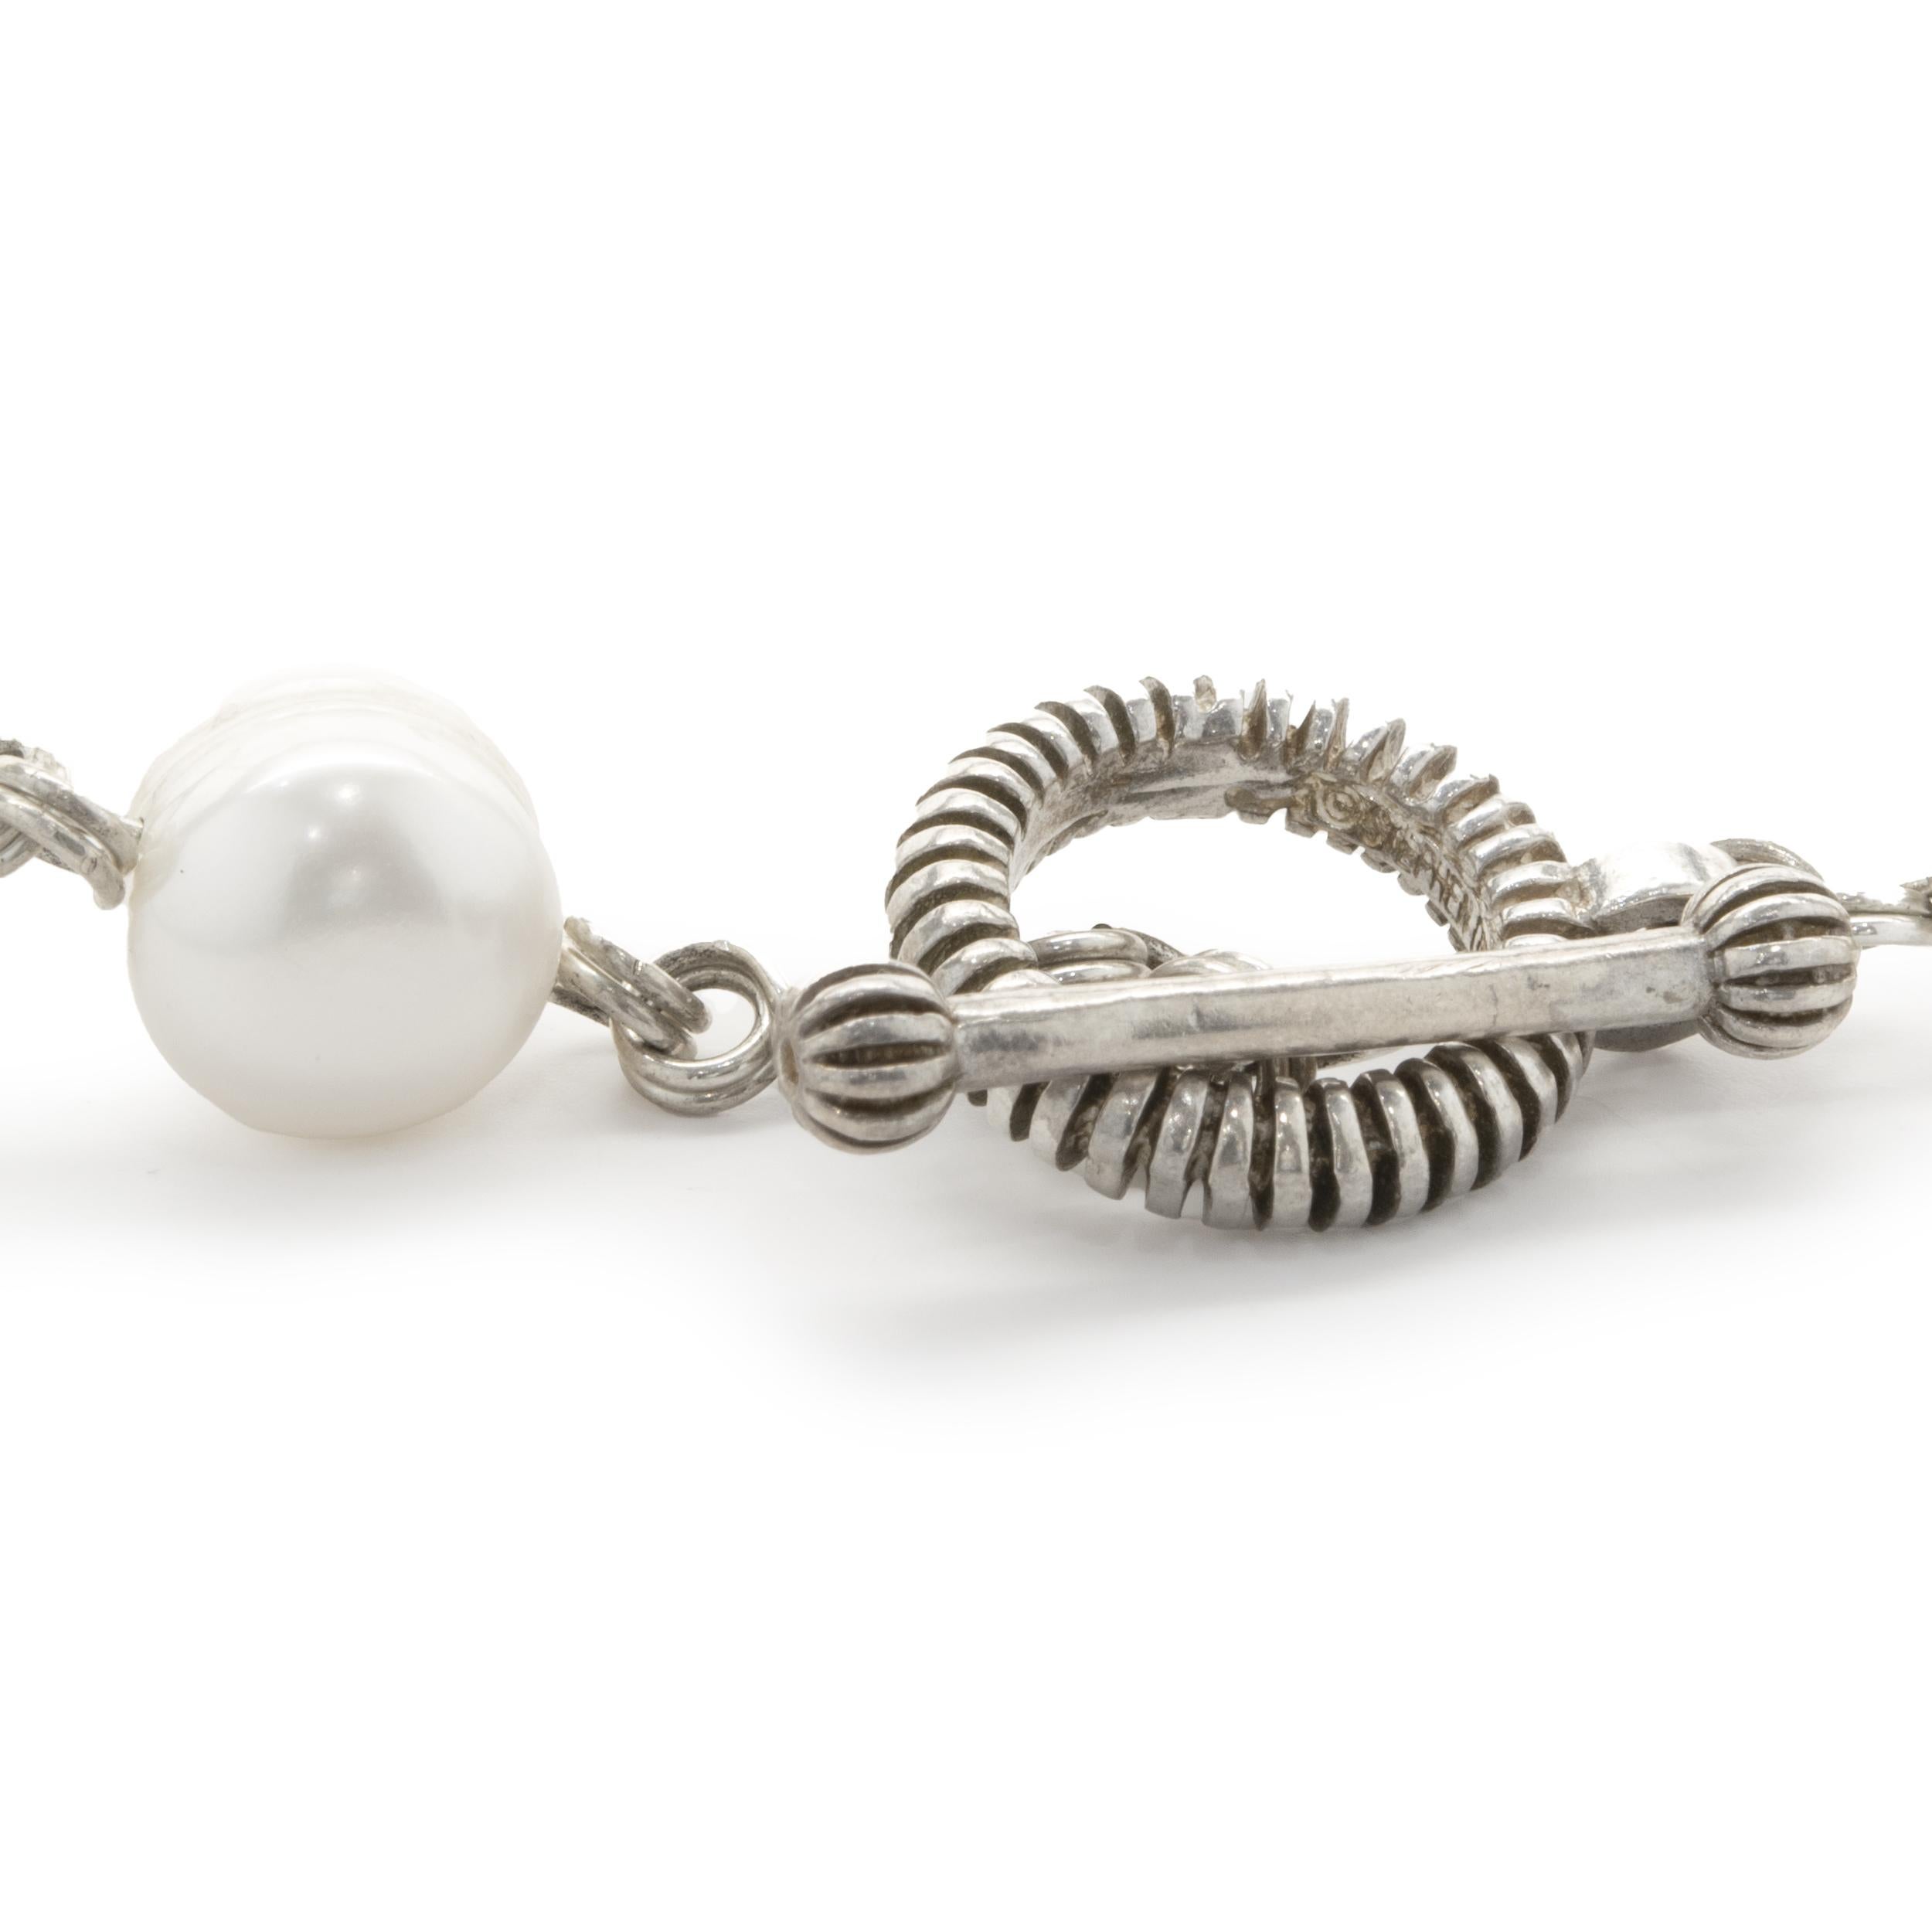 Concepteur : Stephen Dweck
Matériau : argent sterling 
Perles : stations de perles d'eau douce = 11.80mm-12.75mm
Dimensions : le collier mesure 38 pouces de long
Poids : 126,19 grammes	
